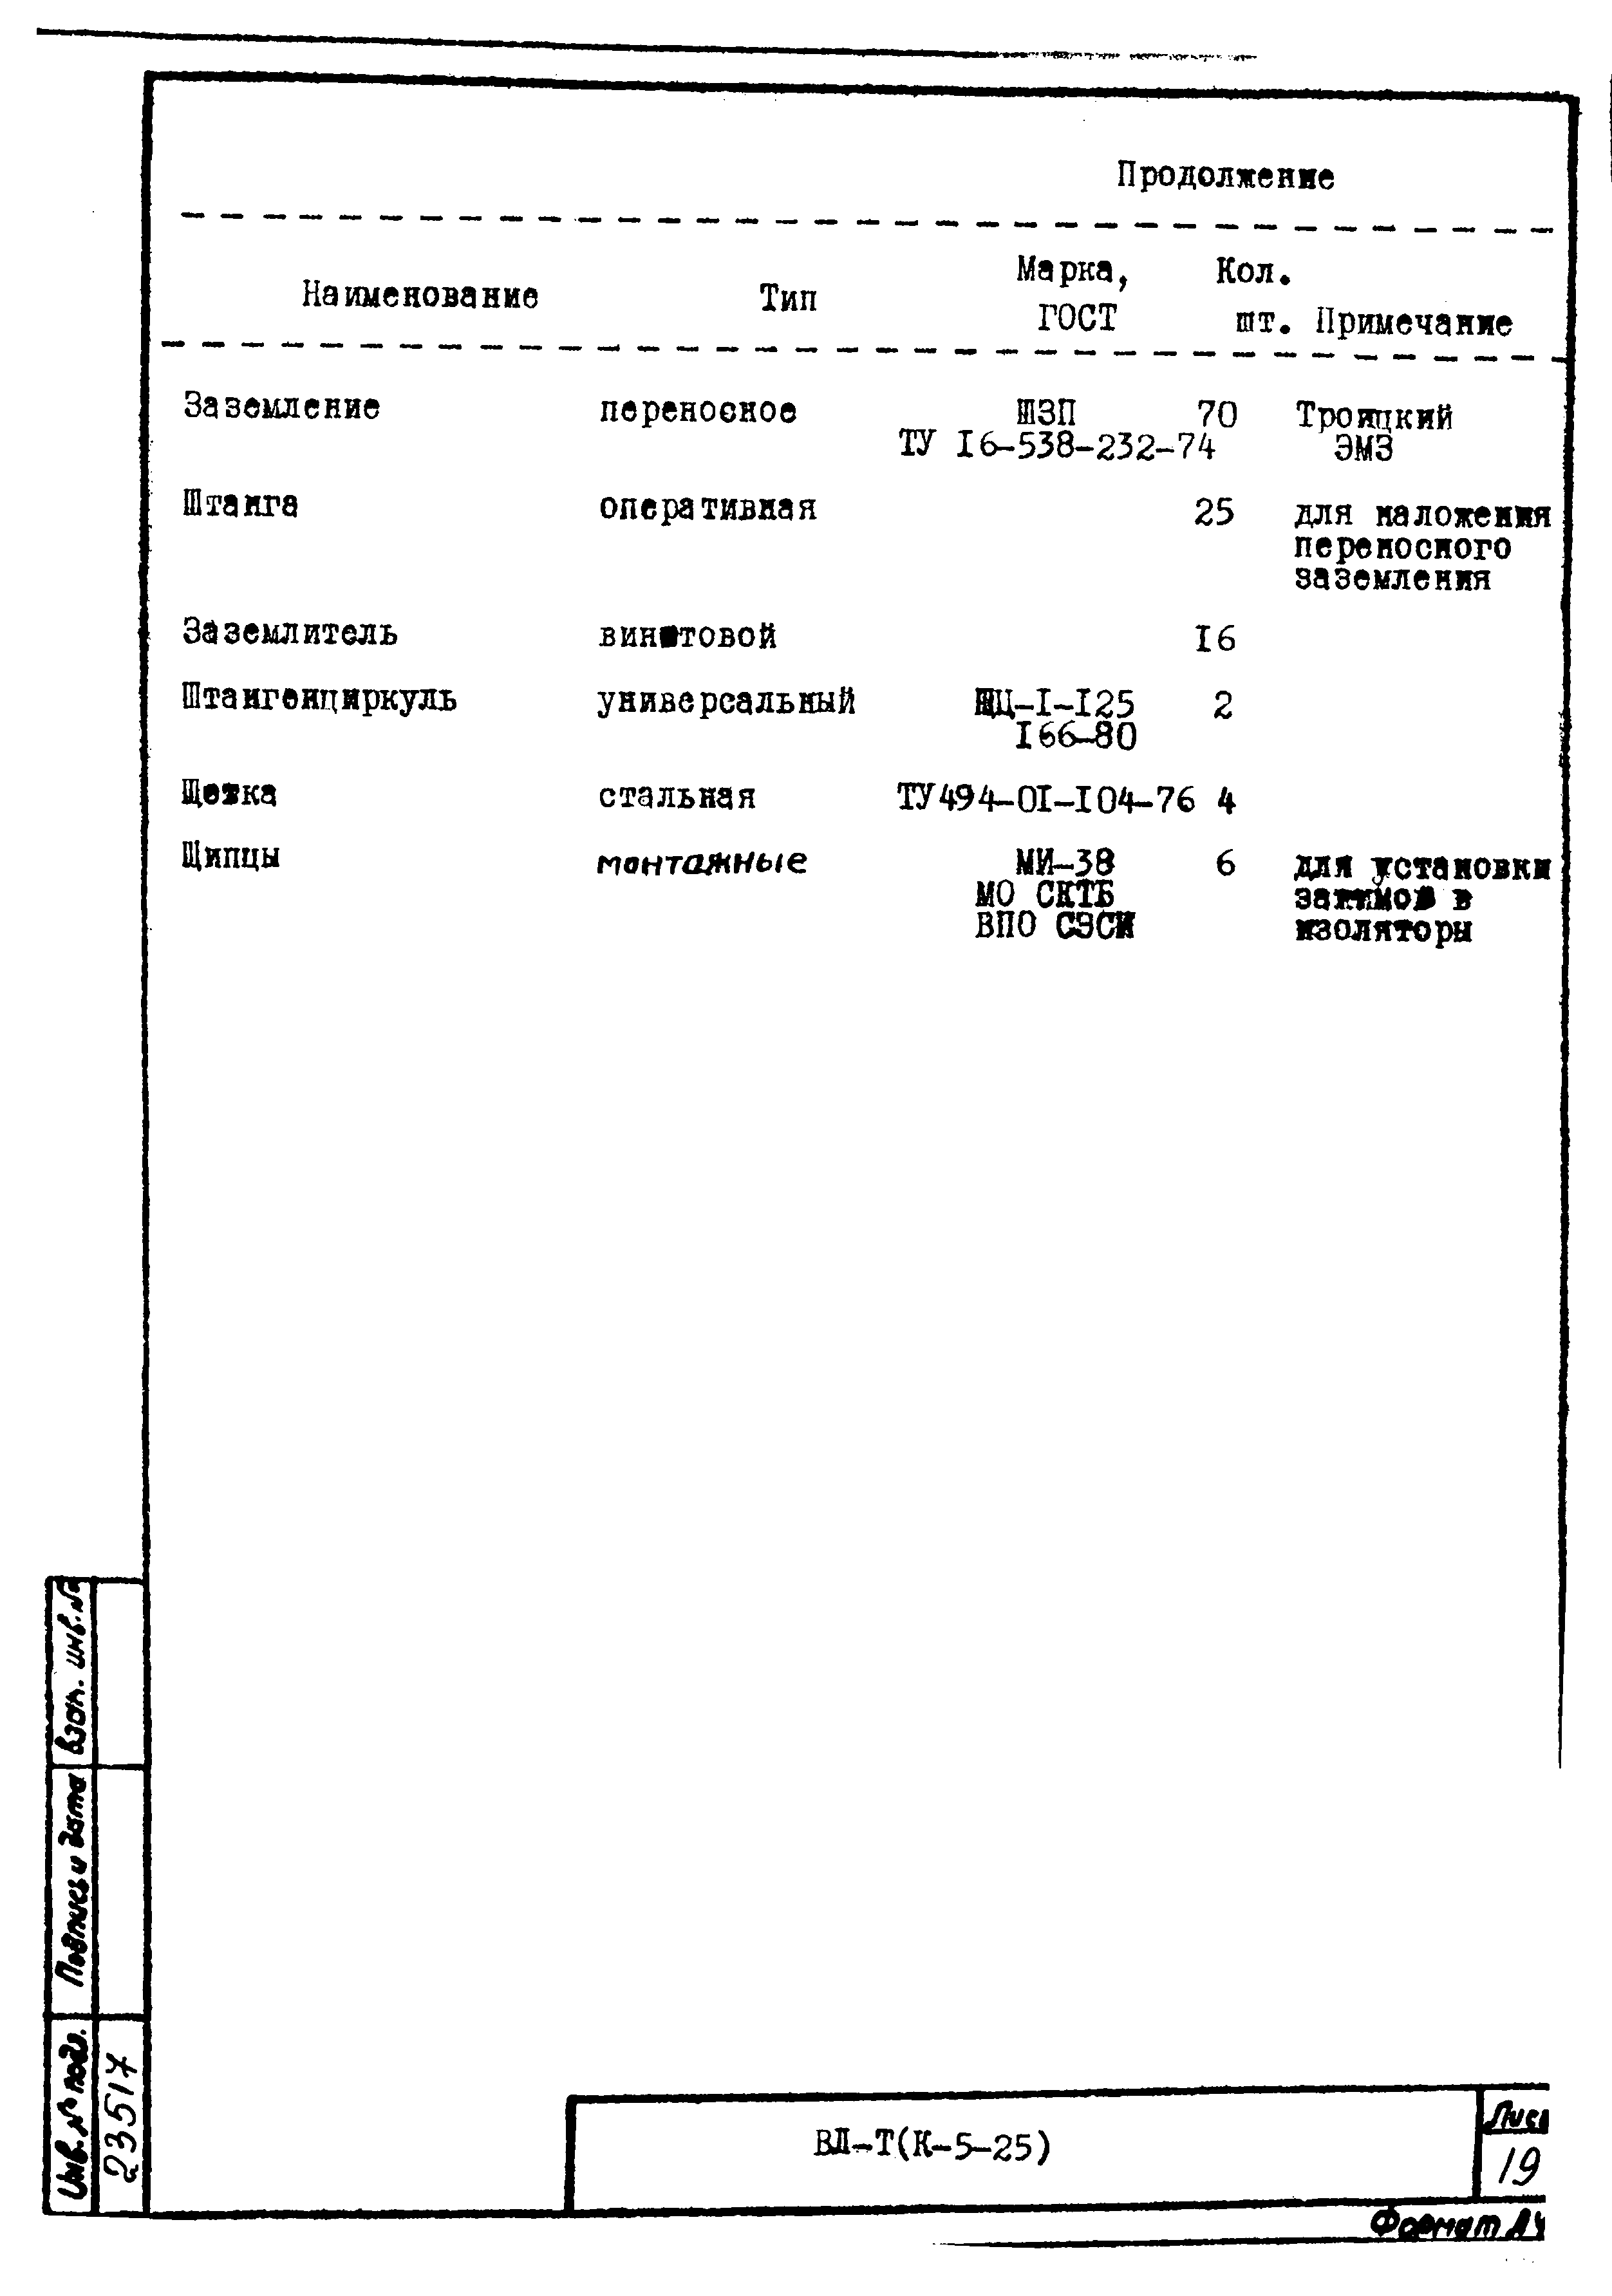 Технологическая карта К-5-25-2